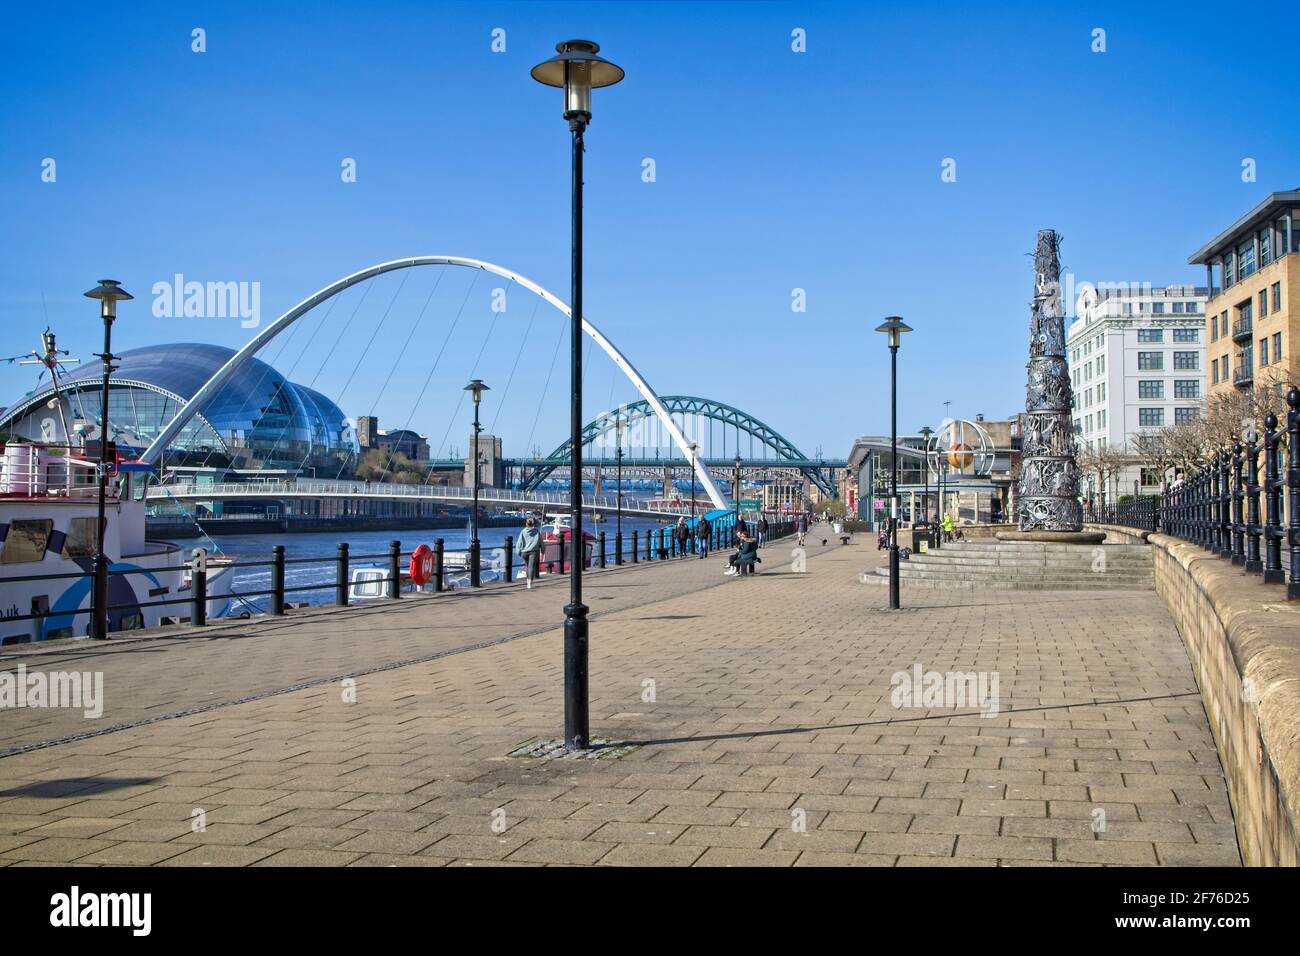 Landschaftsbild Blick auf Newcastles Kai in Richtung Gateshead Millennium Bridge und Tyne Bridge in Tyne and Wear, Nordostengland. Stockfoto